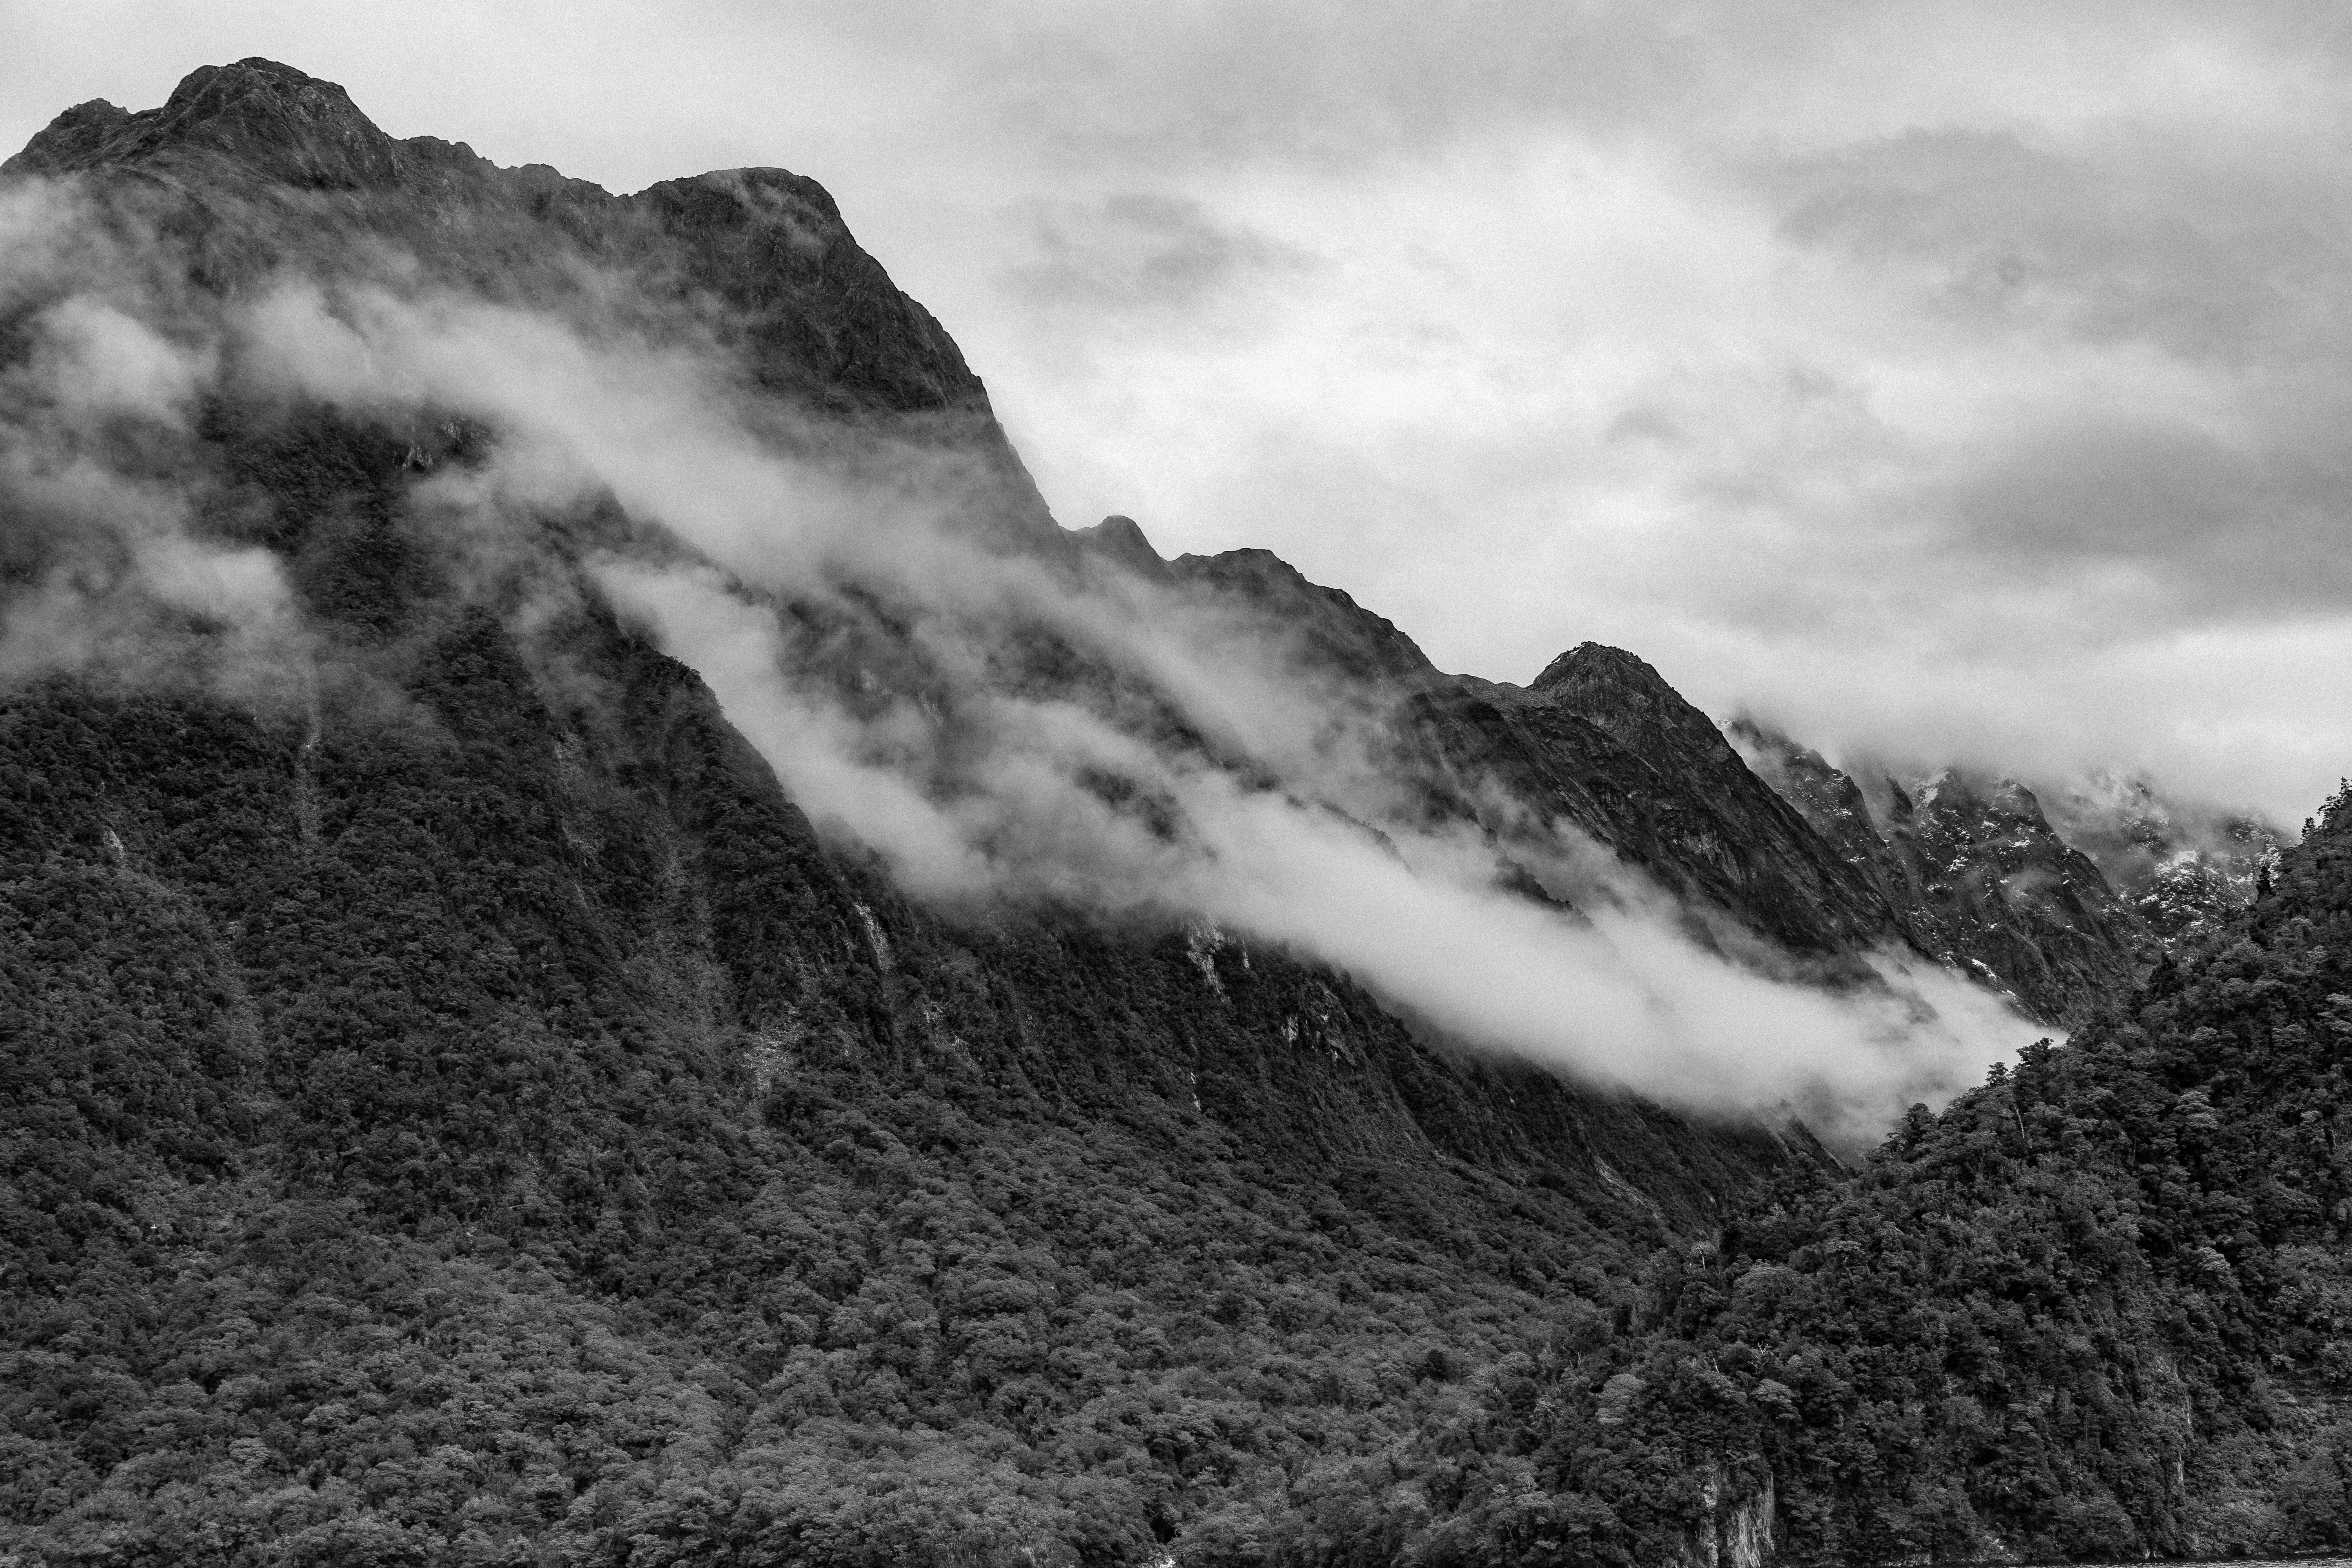 Immagine in bianco e nero della nebbia sulle montagne foto